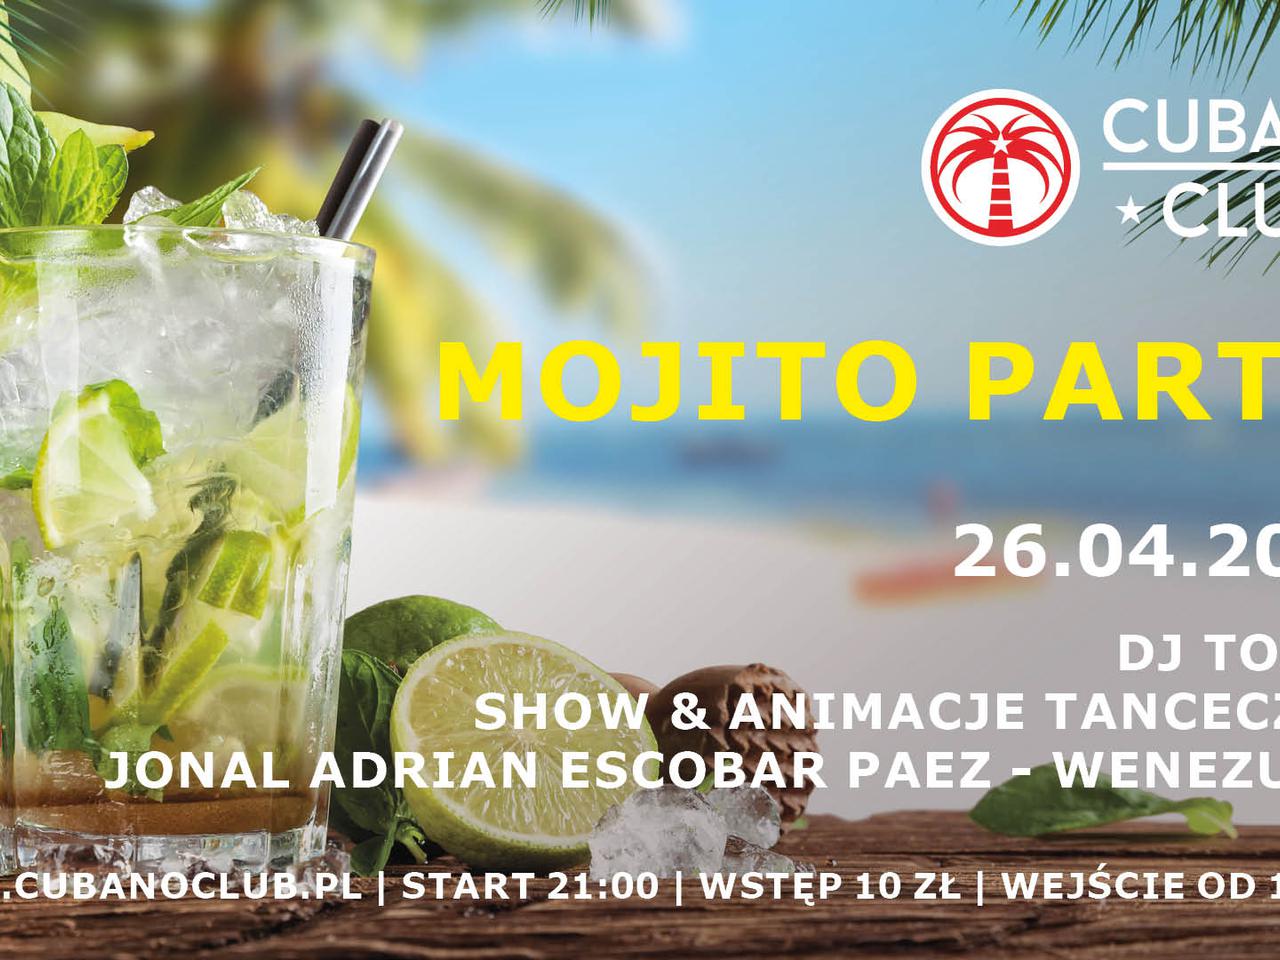 Piątkową noc spędzicie w Cubano Club w Toruniu na Mohito Party!